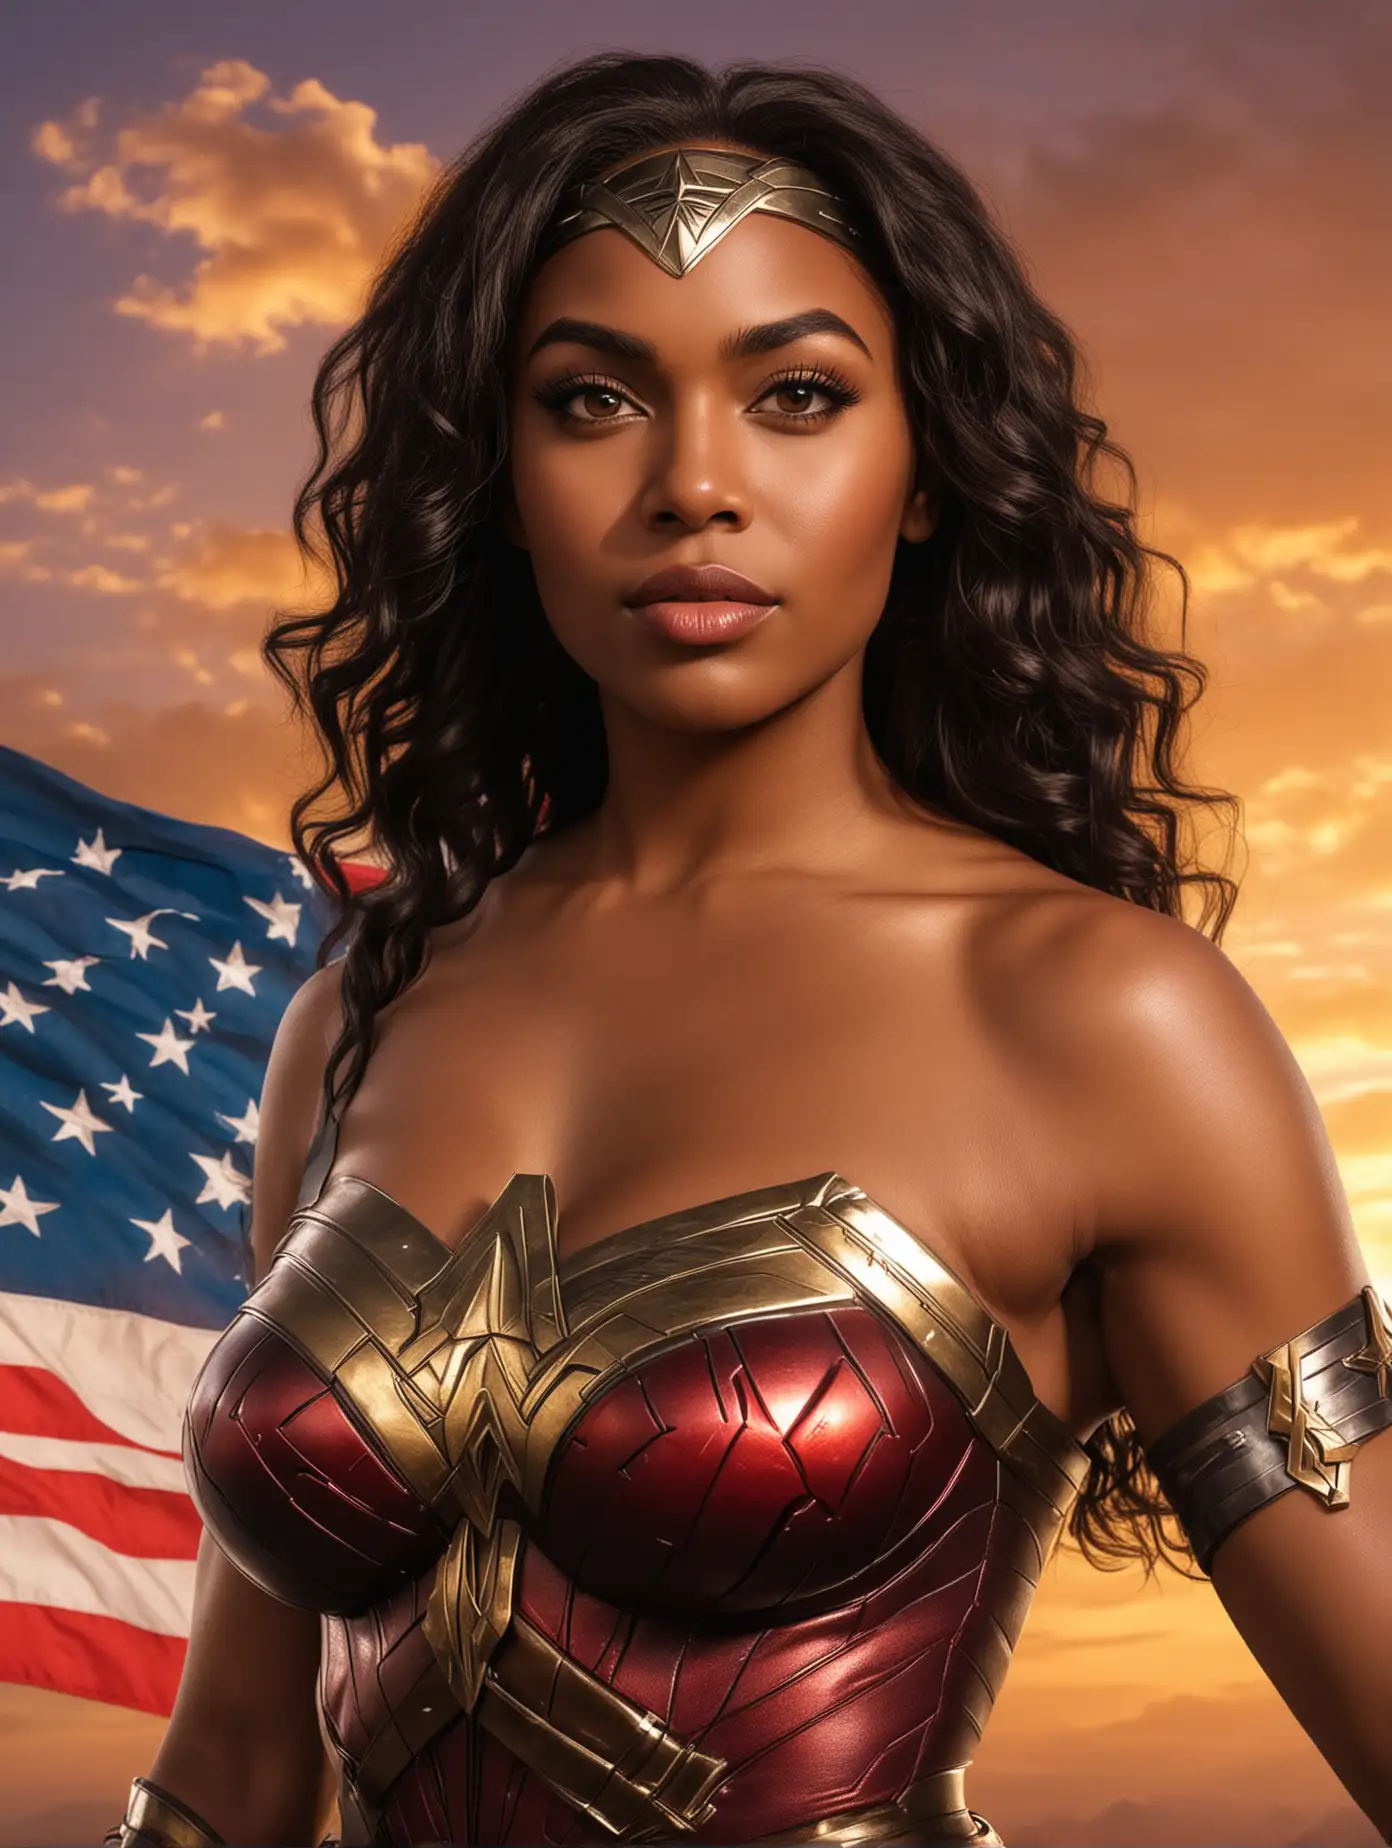 African Wonder Woman Sanaa Lashes Heroic Pose at Sunset